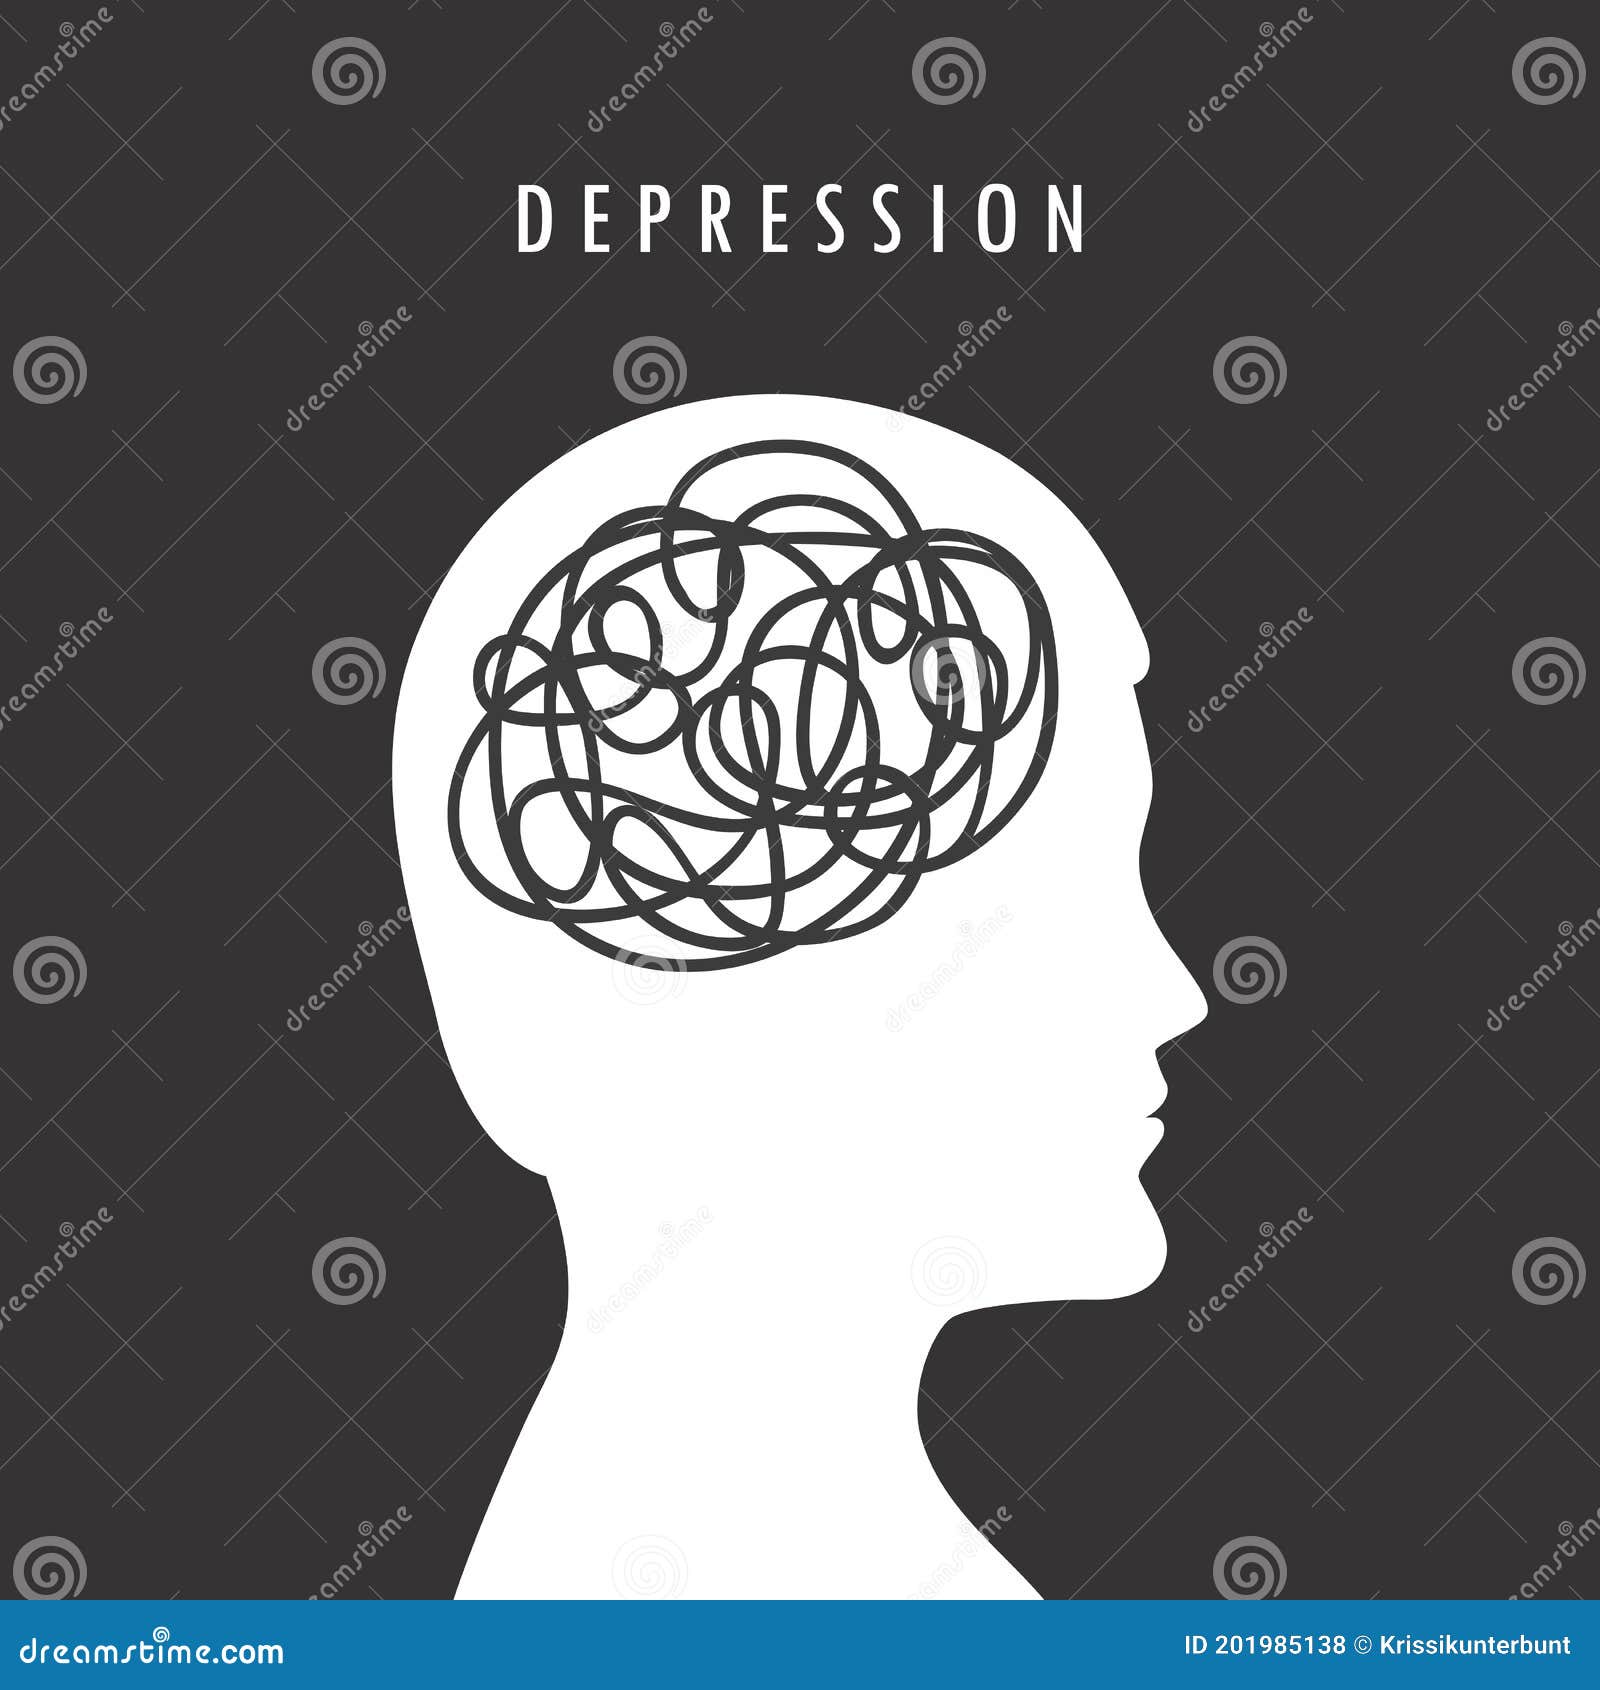 Mental Health Depression Concept Male Head Silhouette Stock Vector ...